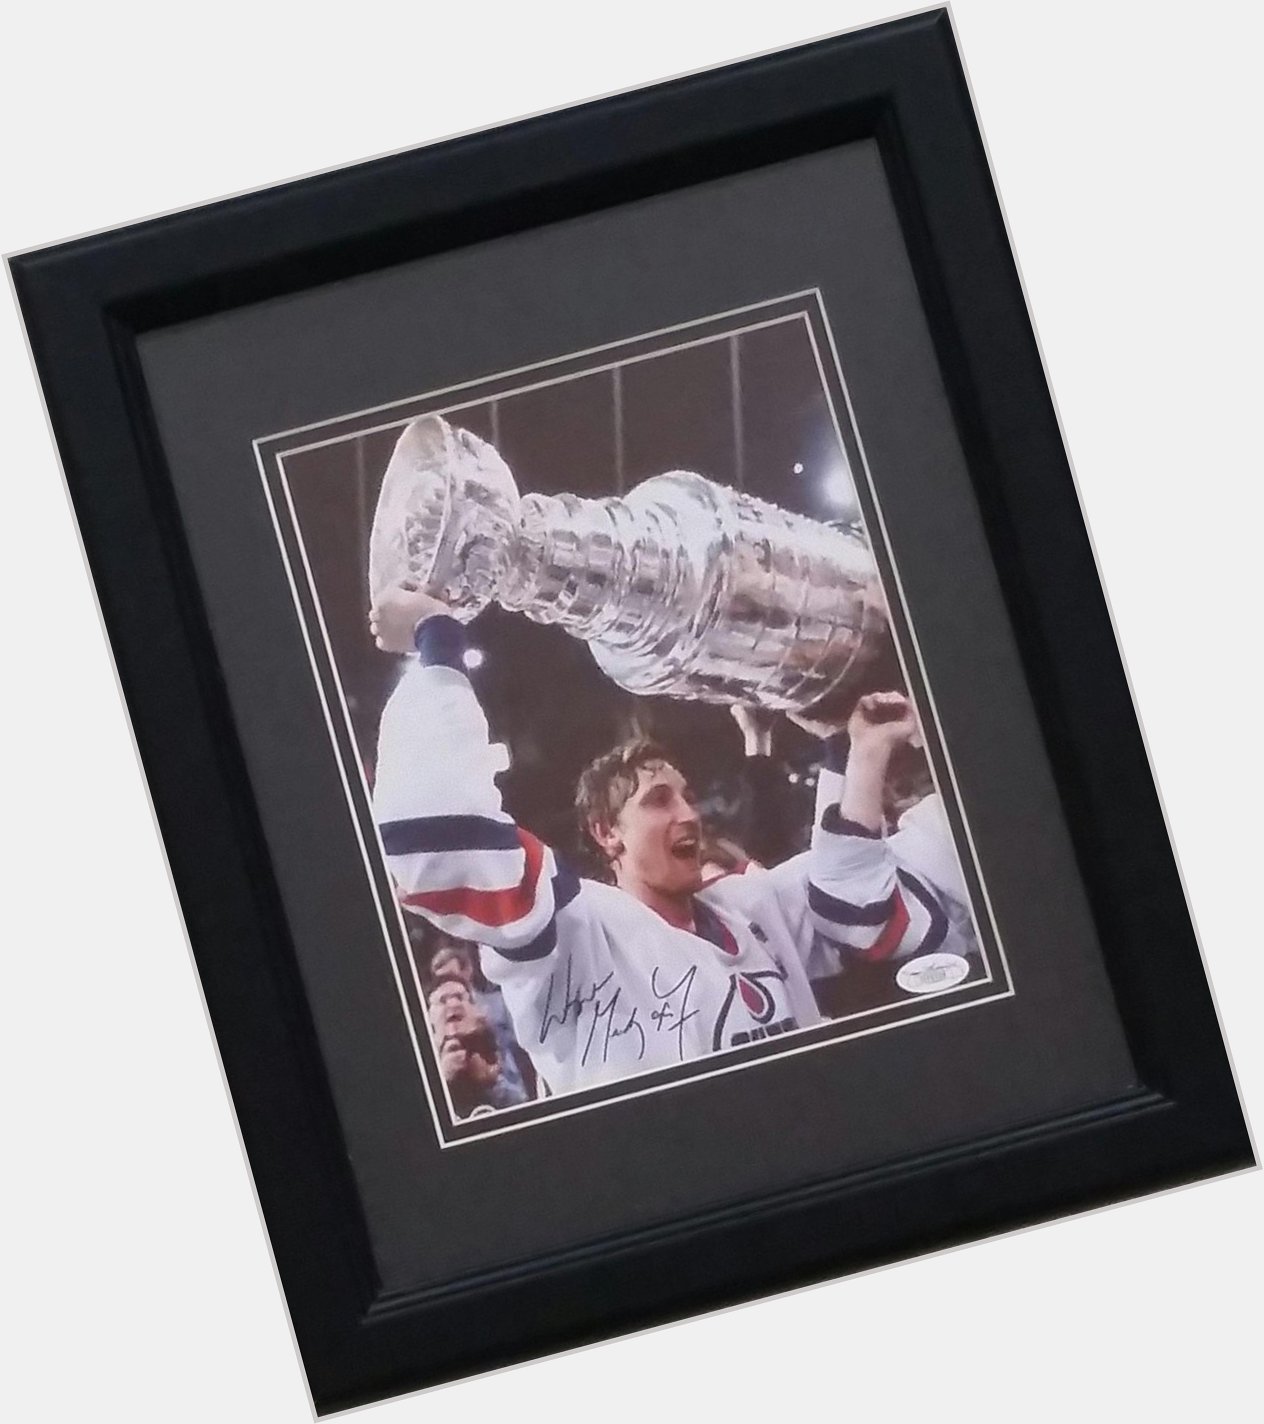 Wishing a Happy Birthday to \"The Great One\" Wayne Gretzky! 